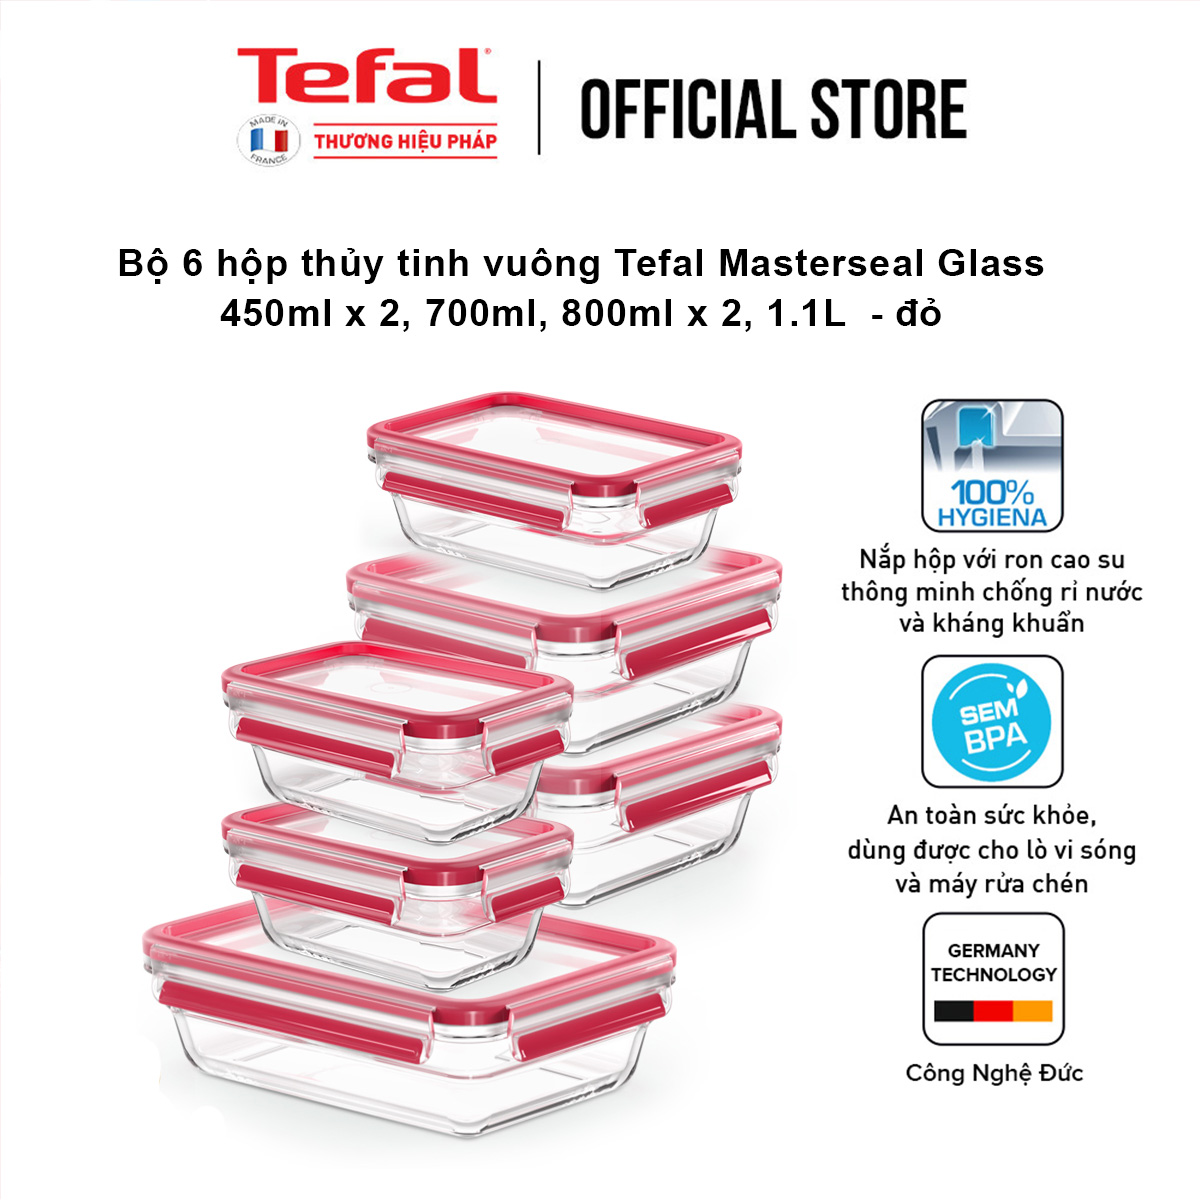 Bộ 5 hộp thủy tinh vuông Tefal Masterseal Glass 450ml x 2, 700ml, 800ml, 1.1L  - đỏ